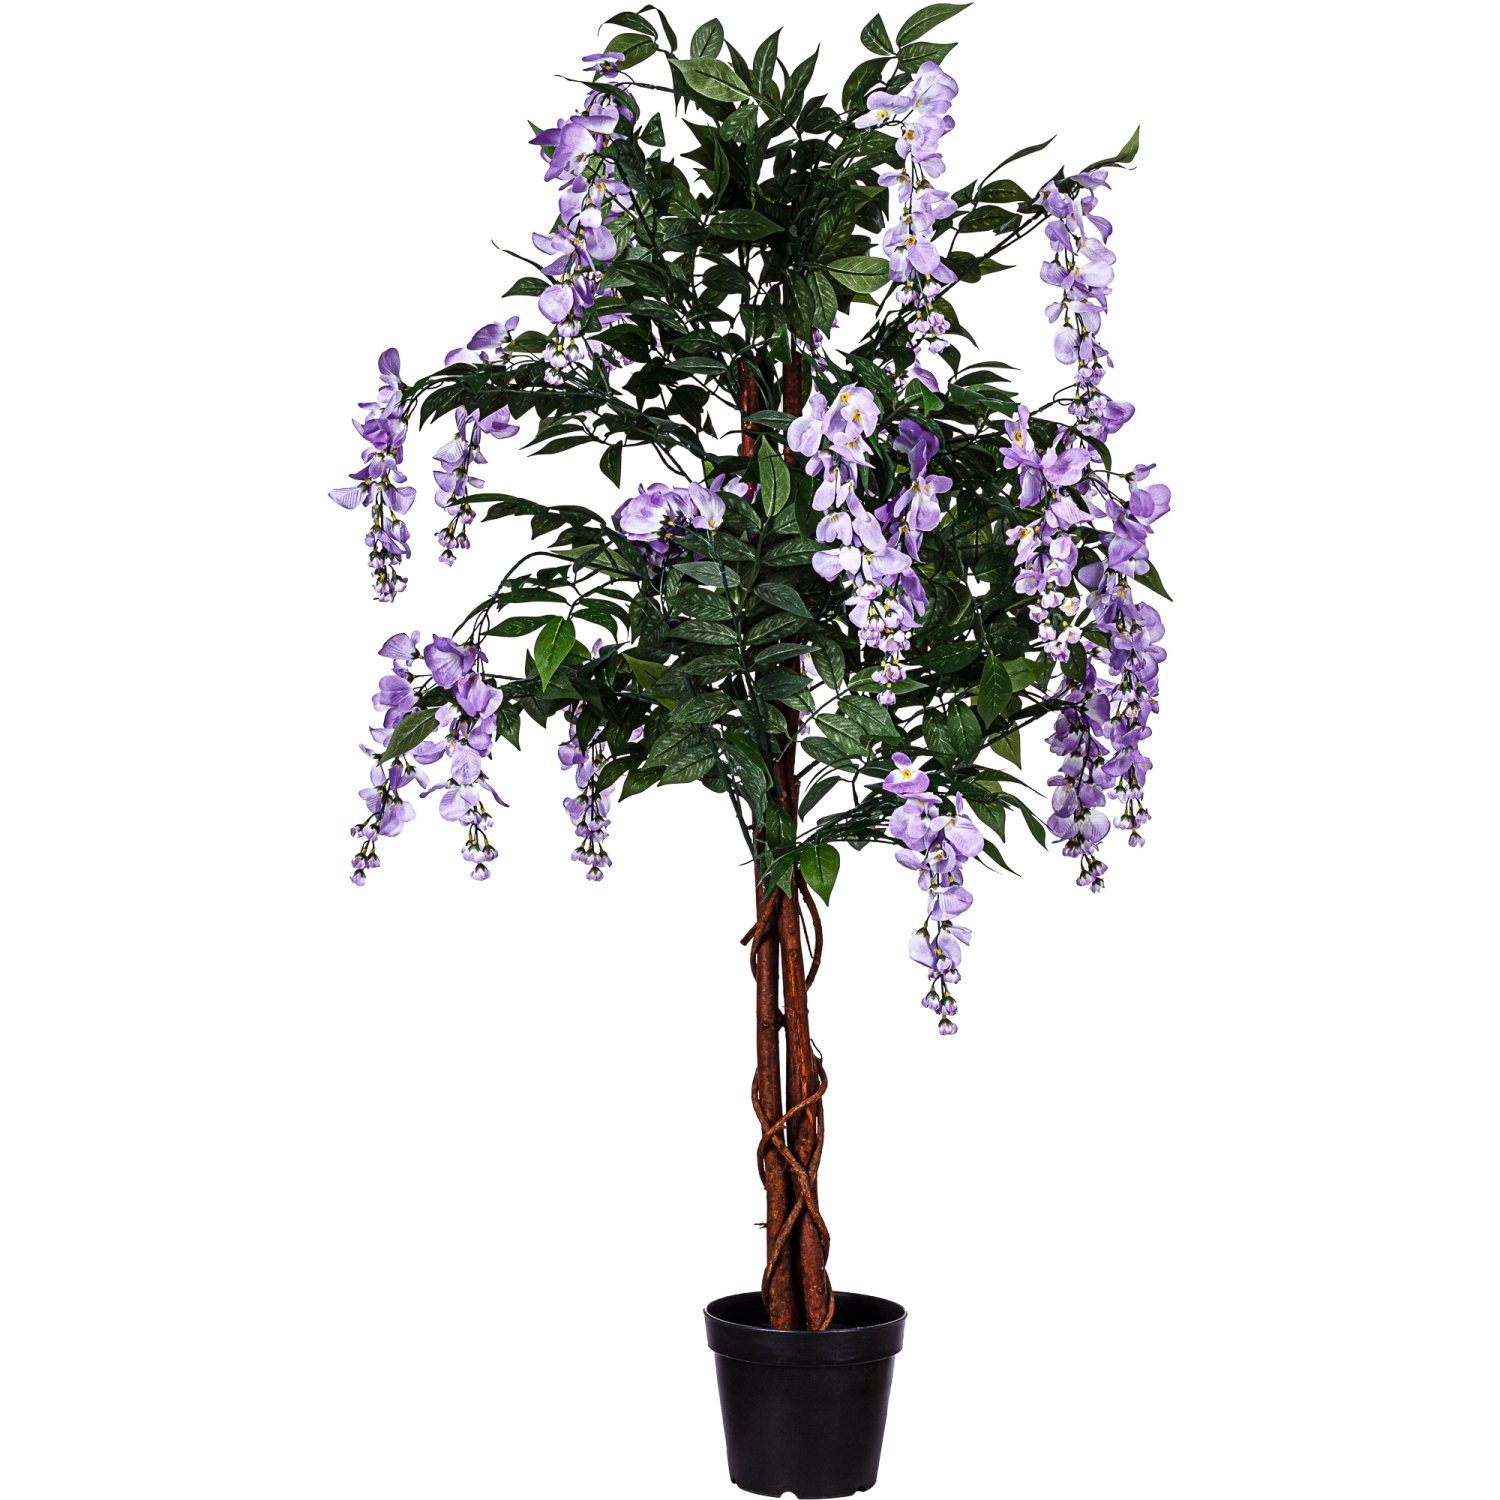 Echtholzstamm, Künstlicher Wisteria Violette Blauregen Blüten Kunstbaum PLANTASIA, cm, Höhe 120,00 756 Wisteriabaum, Blätter, Baum Kunstpflanze